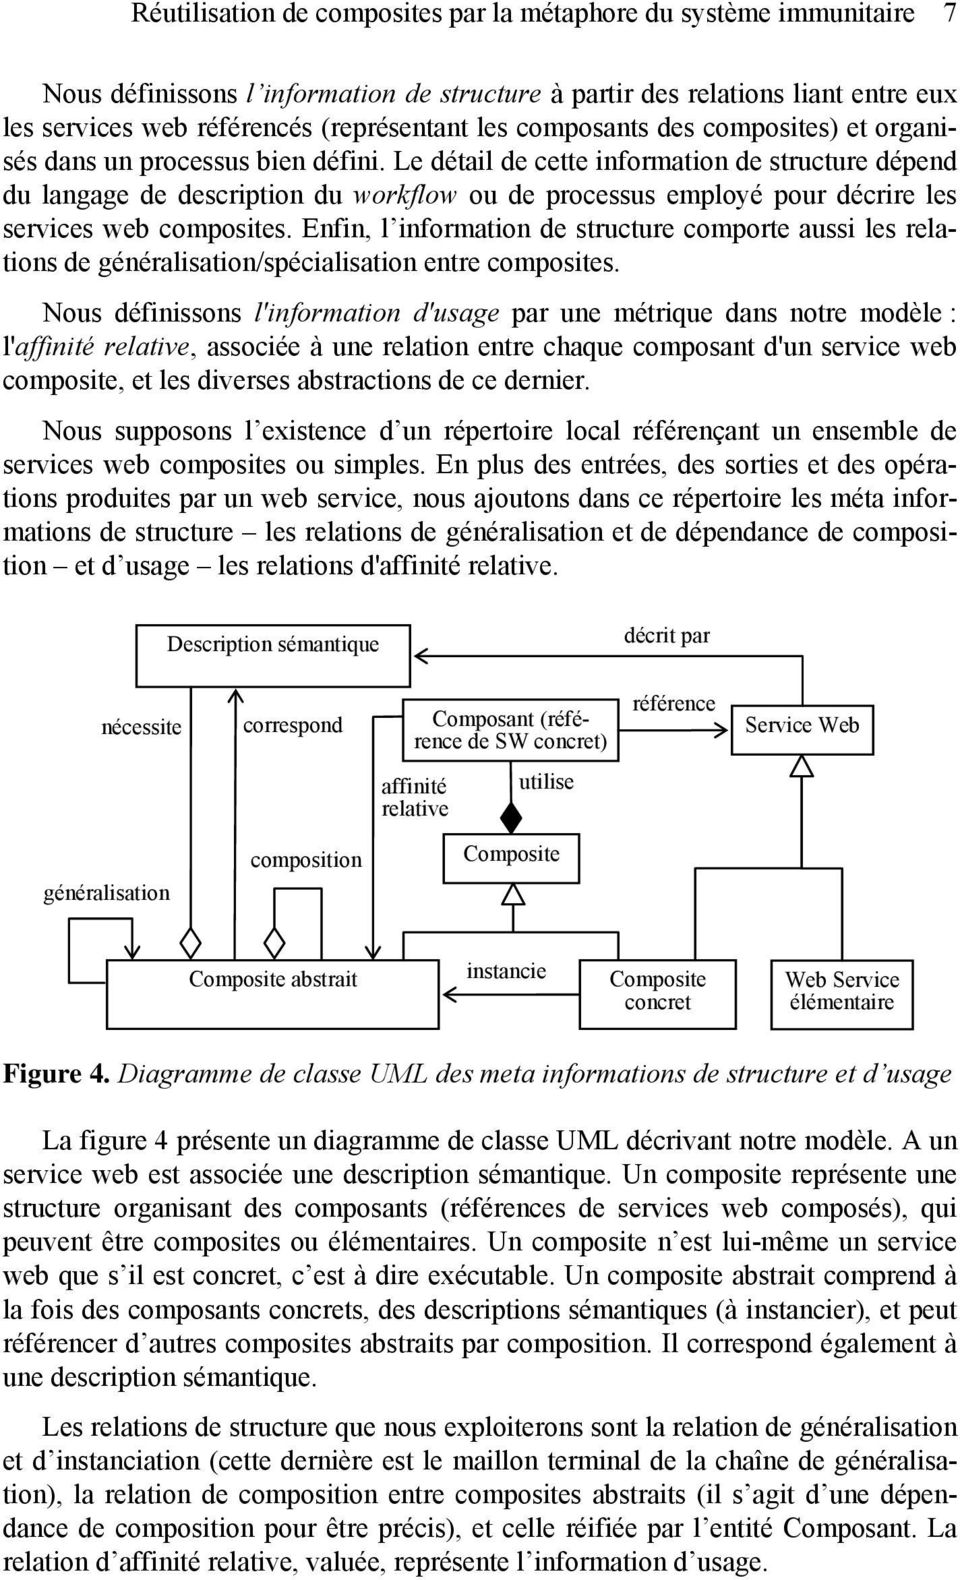 Le détail de cette information de structure dépend du langage de description du workflow ou de processus employé pour décrire les services web composites.